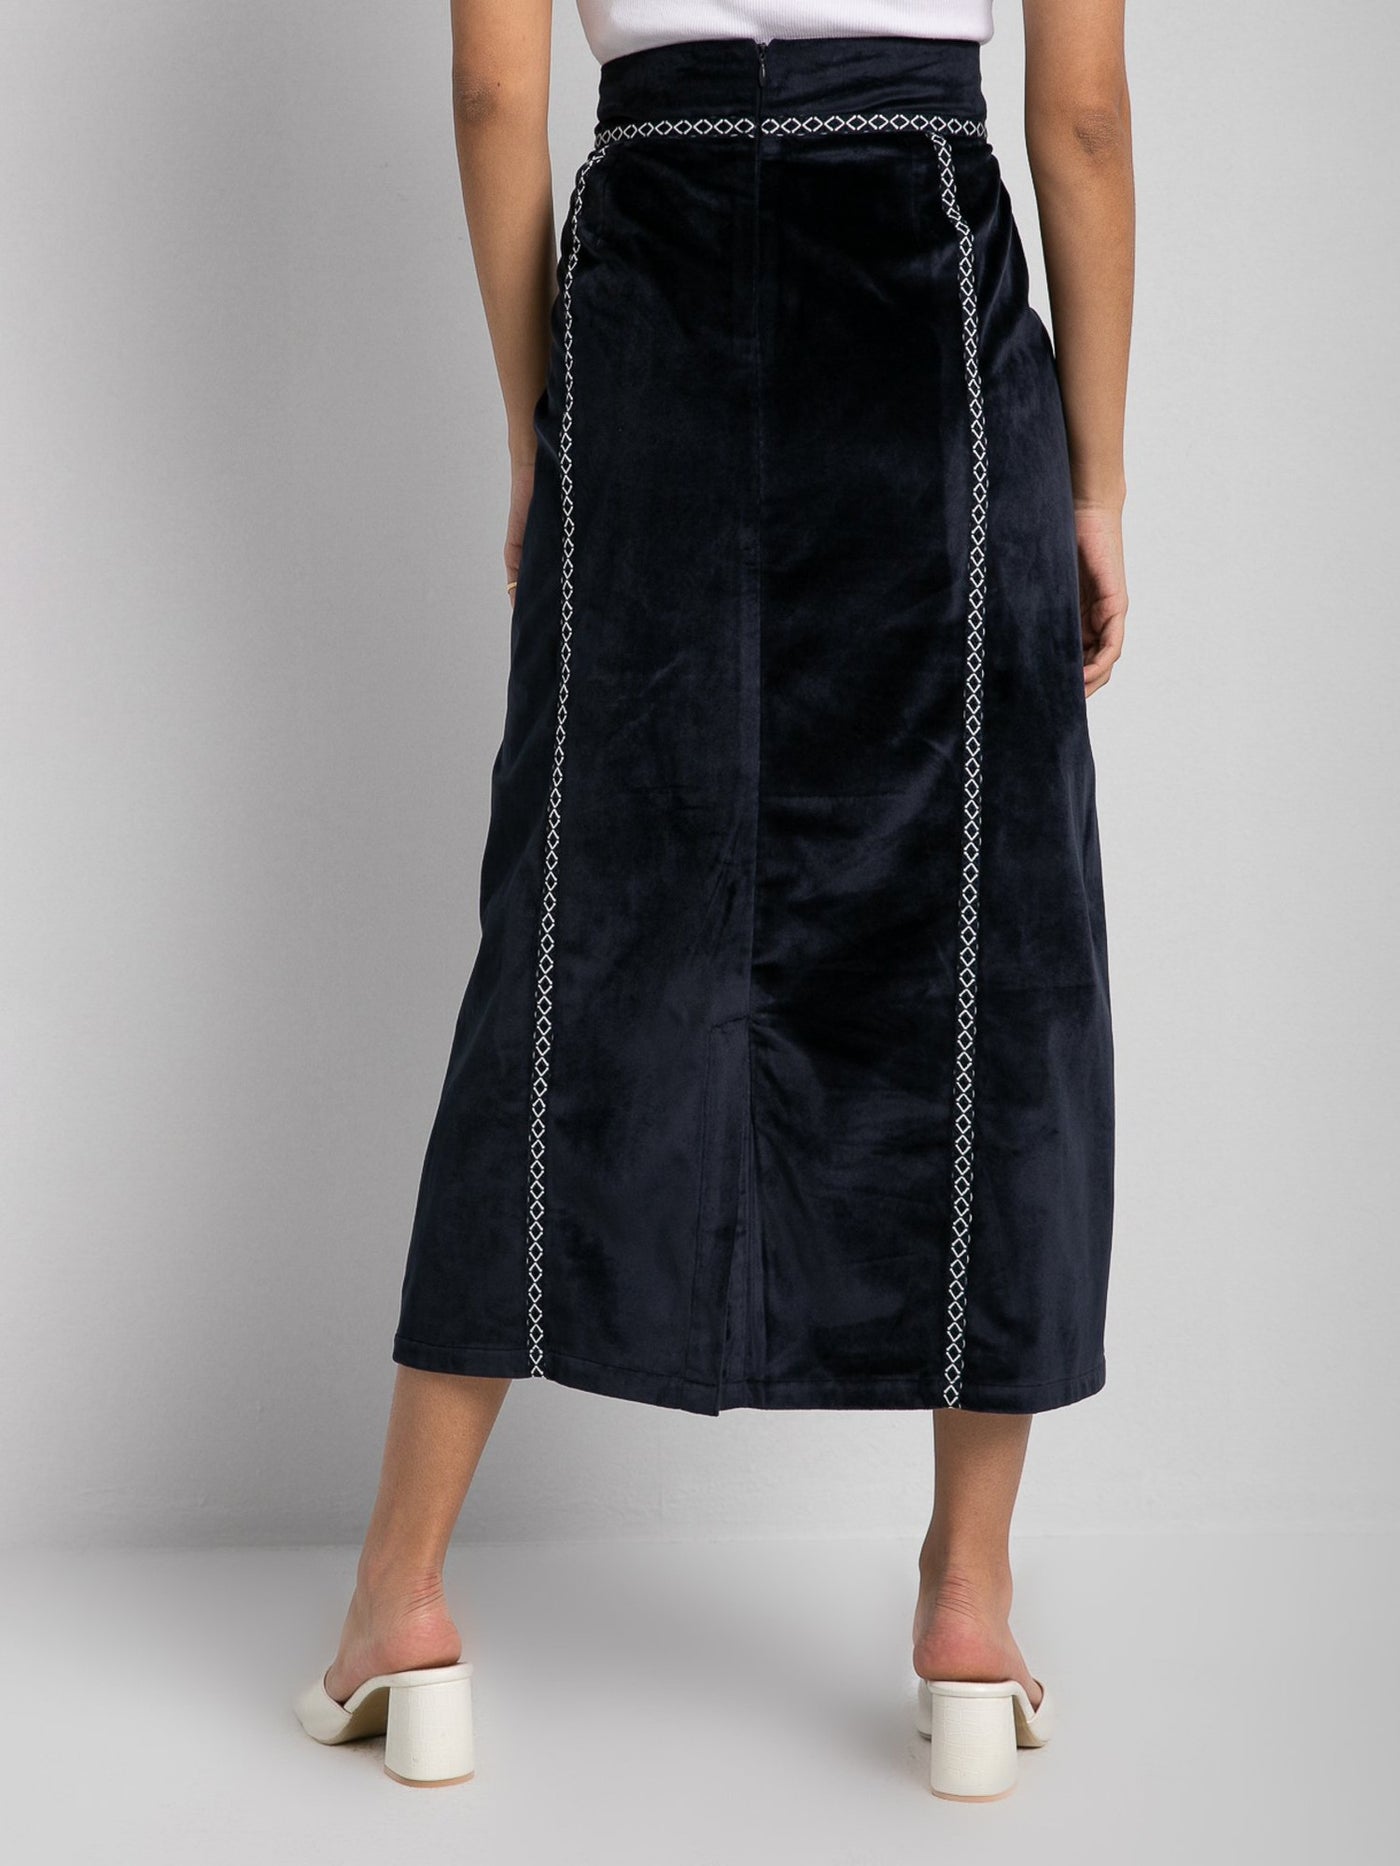 Velvet Skirt - Embroidered Design